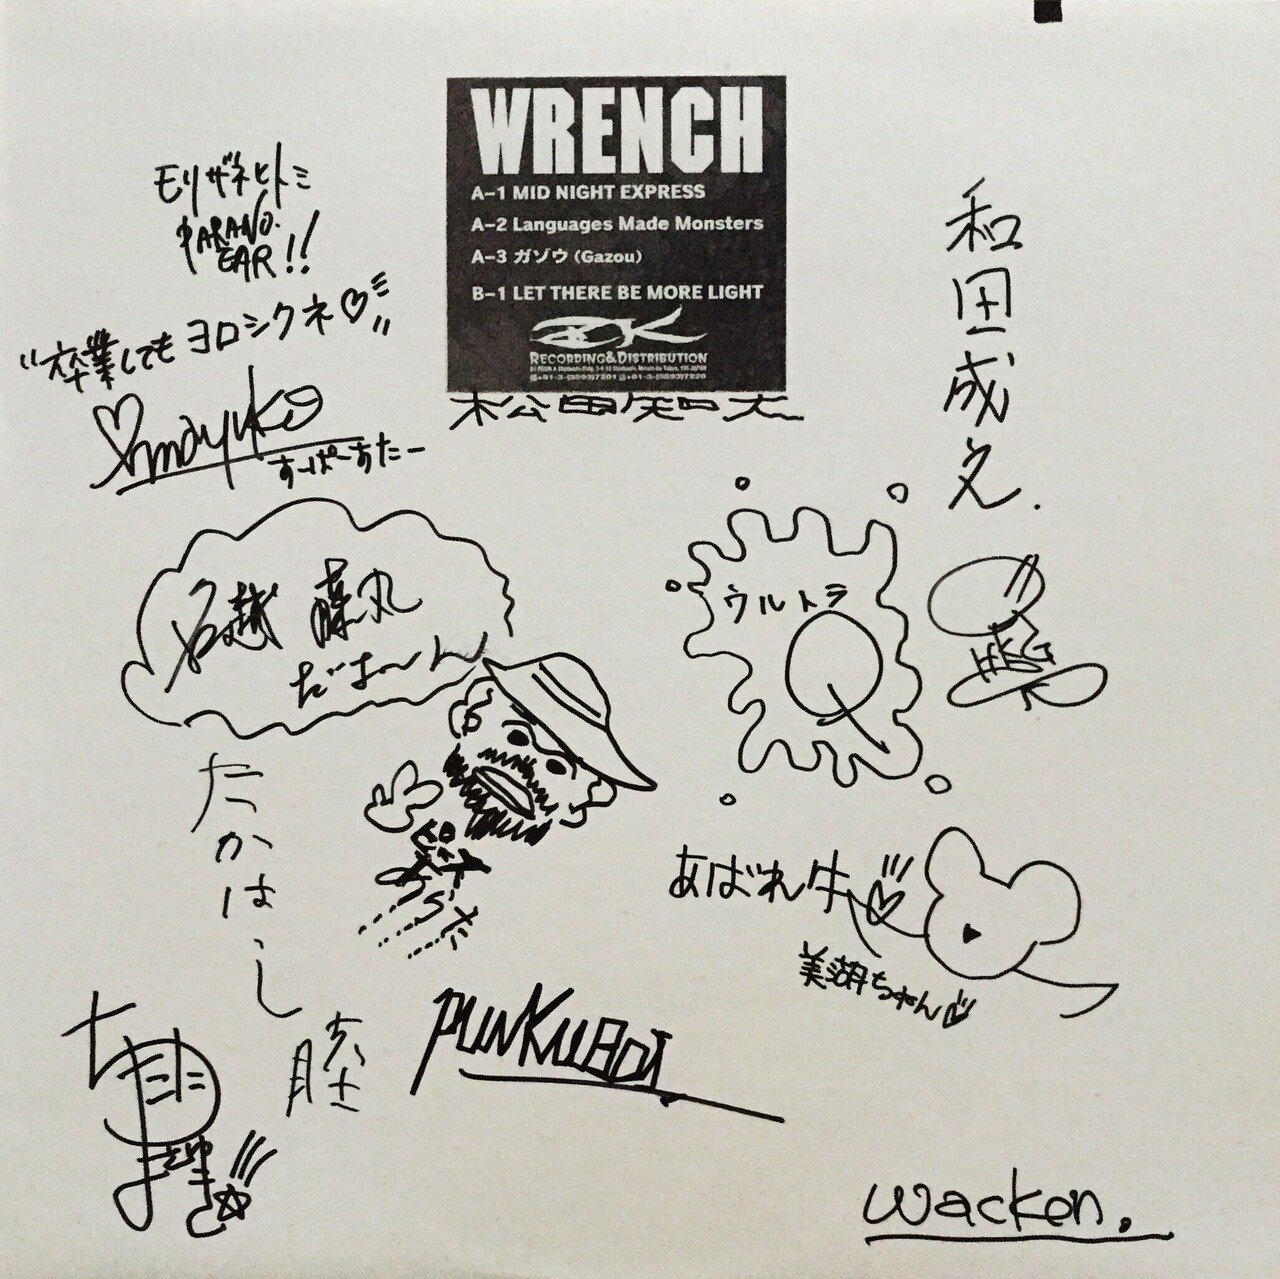 WRENCH ～サイン入りレコードA to Z Donuts版 第回 WRENCH｜五辺宏明